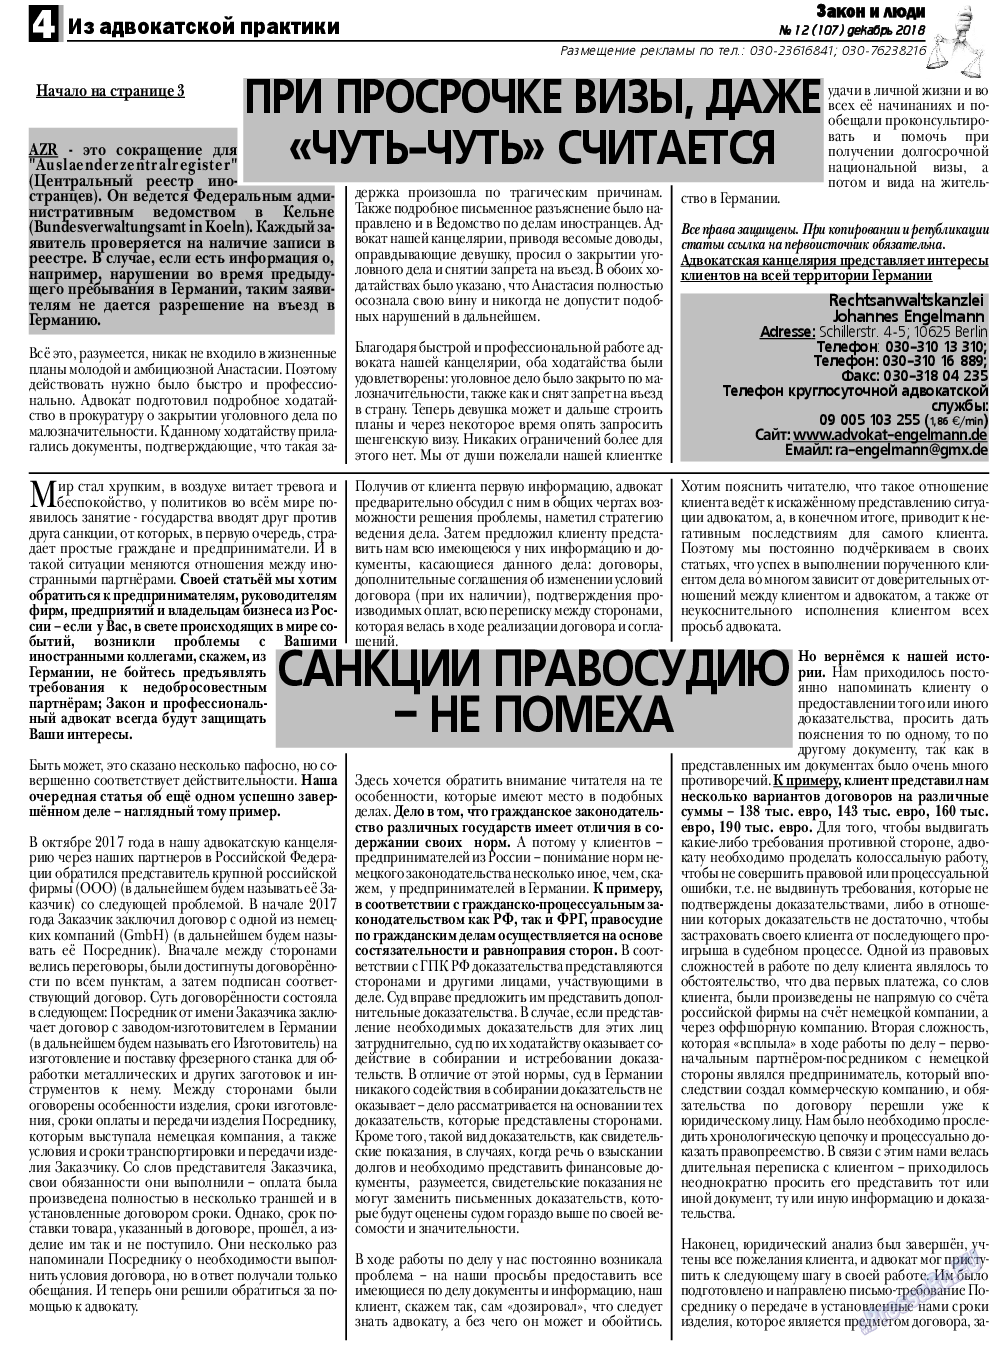 Закон и люди, газета. 2018 №12 стр.4